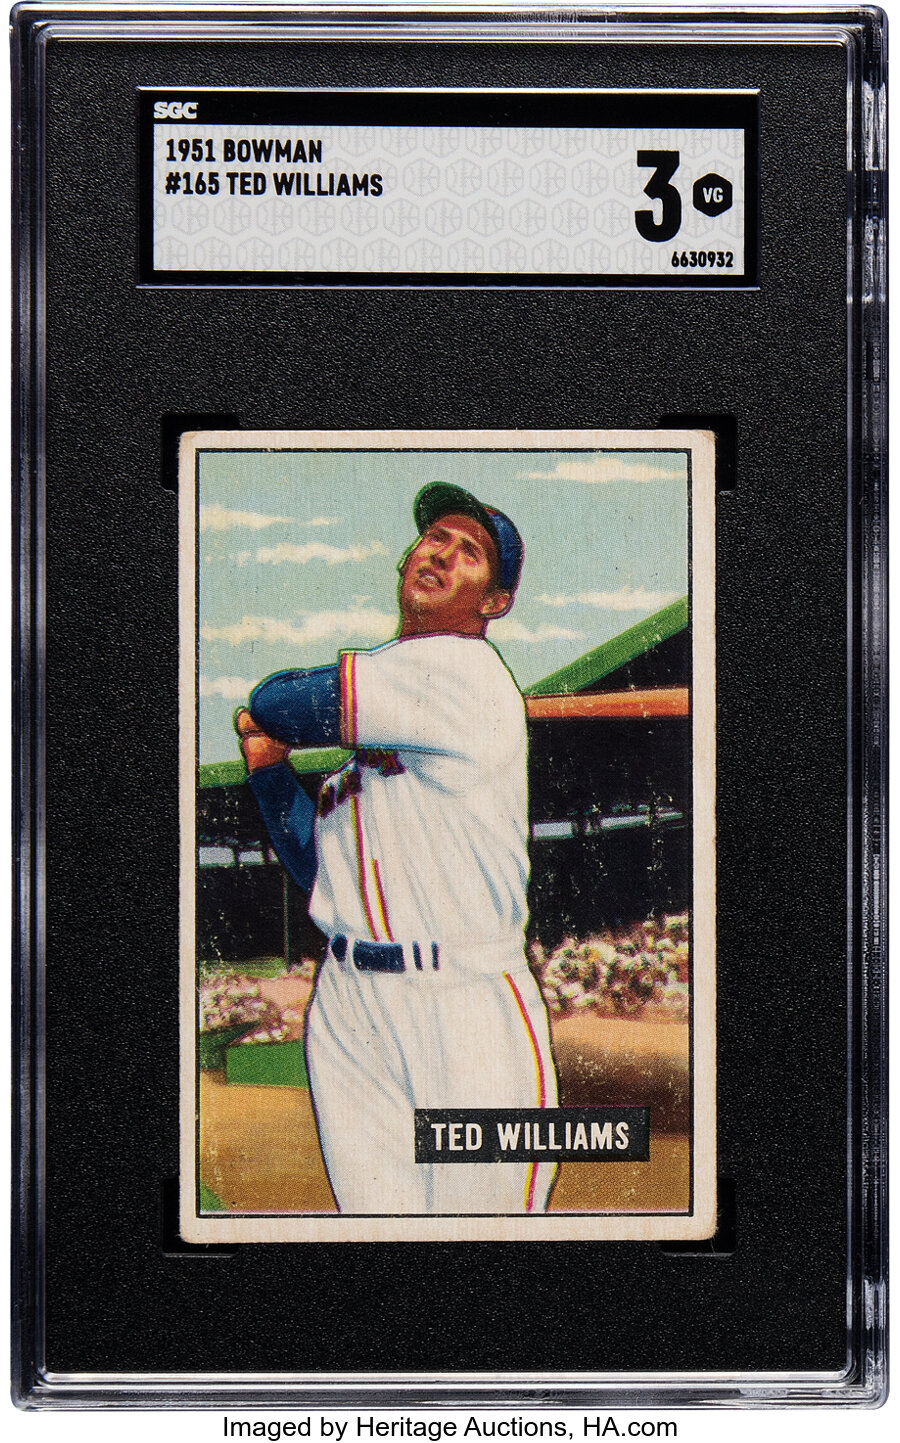 1951 Bowman Ted Williams #165 SGC VG 3